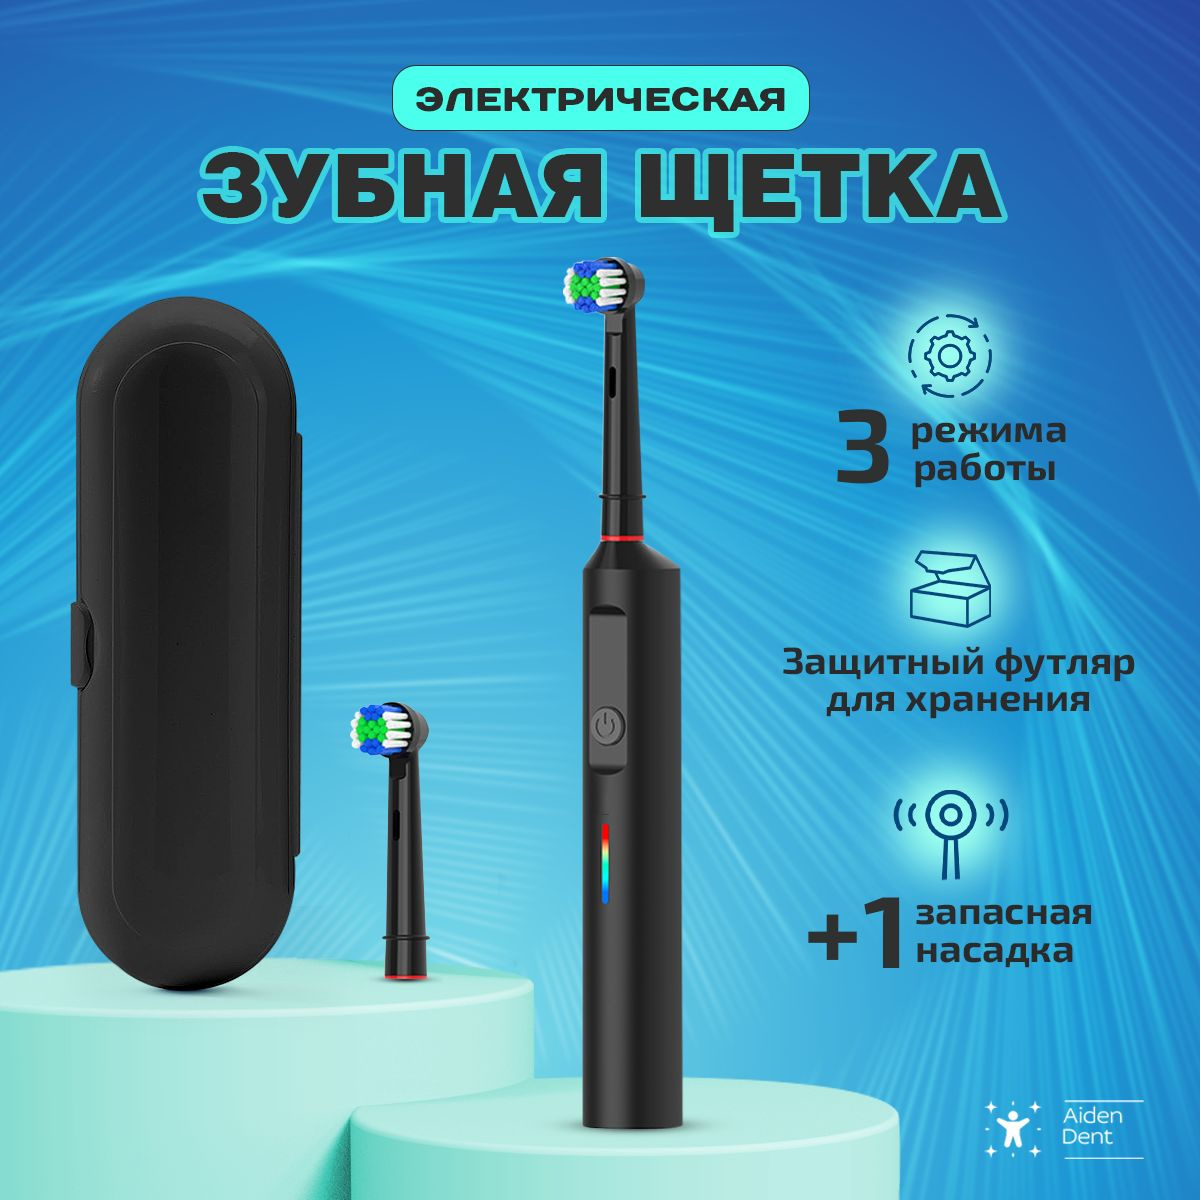 https://www.ozon.ru/product/elektricheskaya-zubnaya-shchetka-vzroslaya-s-futlyarom-1577474563/?from_sku=1577474563&oos_search=false&prev_collection=22568239